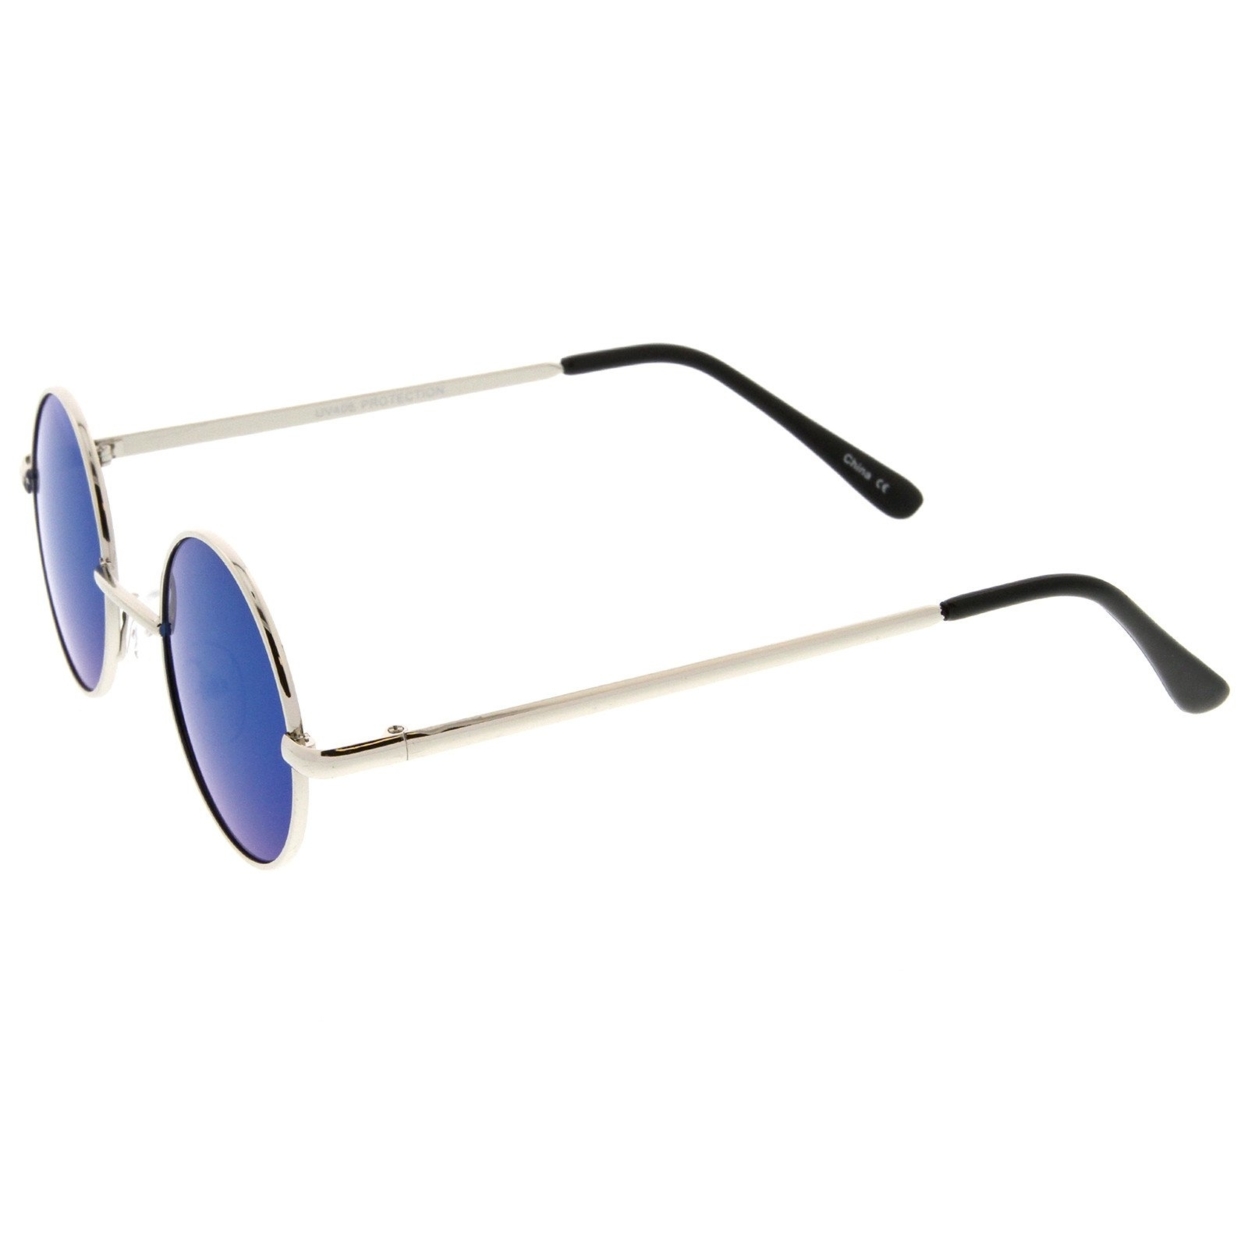 Small Retro Lennon Style Colored Mirror Lens Round Metal Sunglasses 41mm - Silver / Silver Mirror